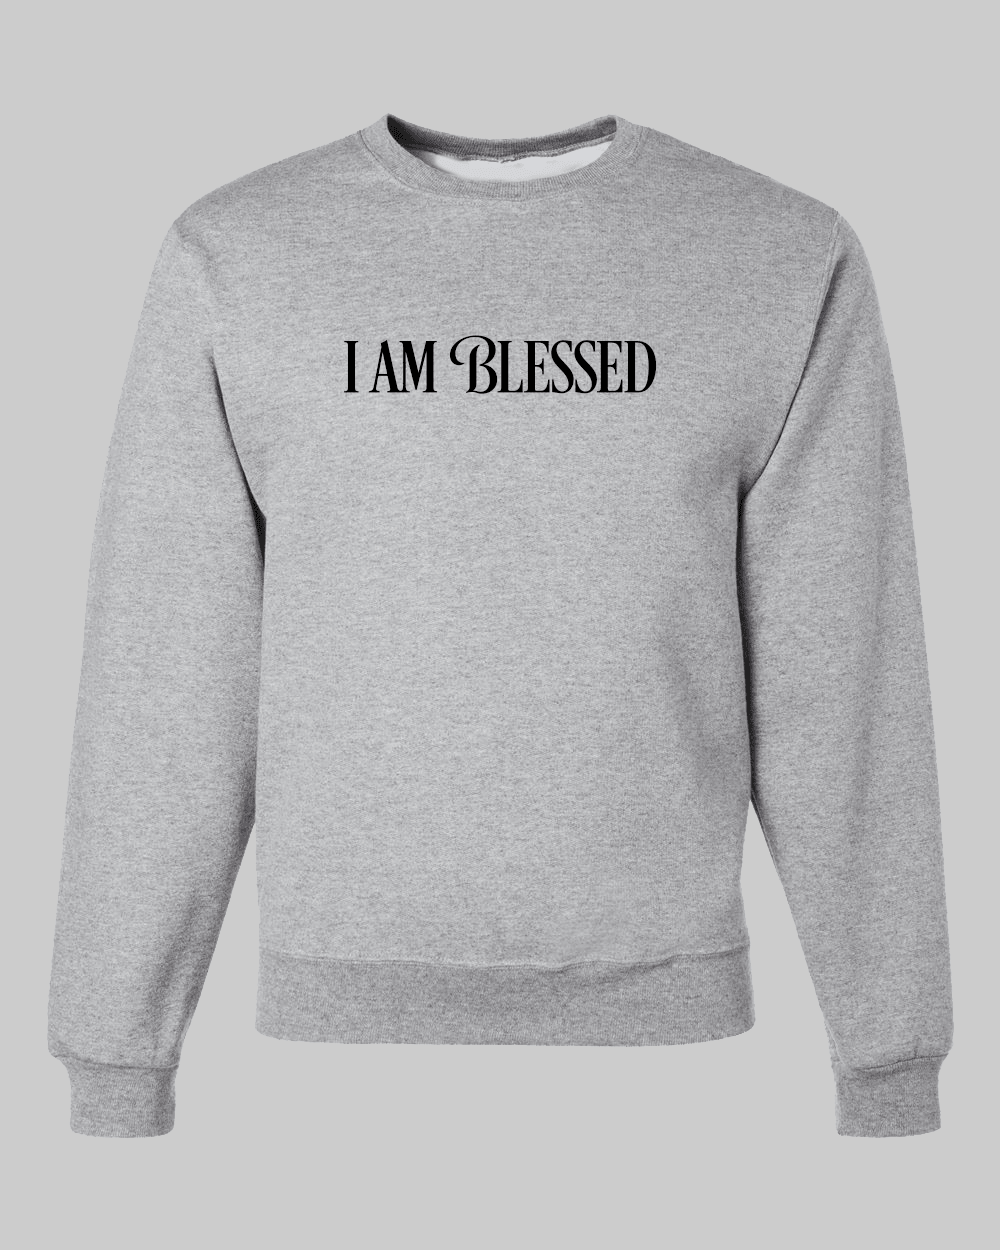 Be Still & Know Unisex Grey Fleece Sweatshirt - Mercy Plus Grace